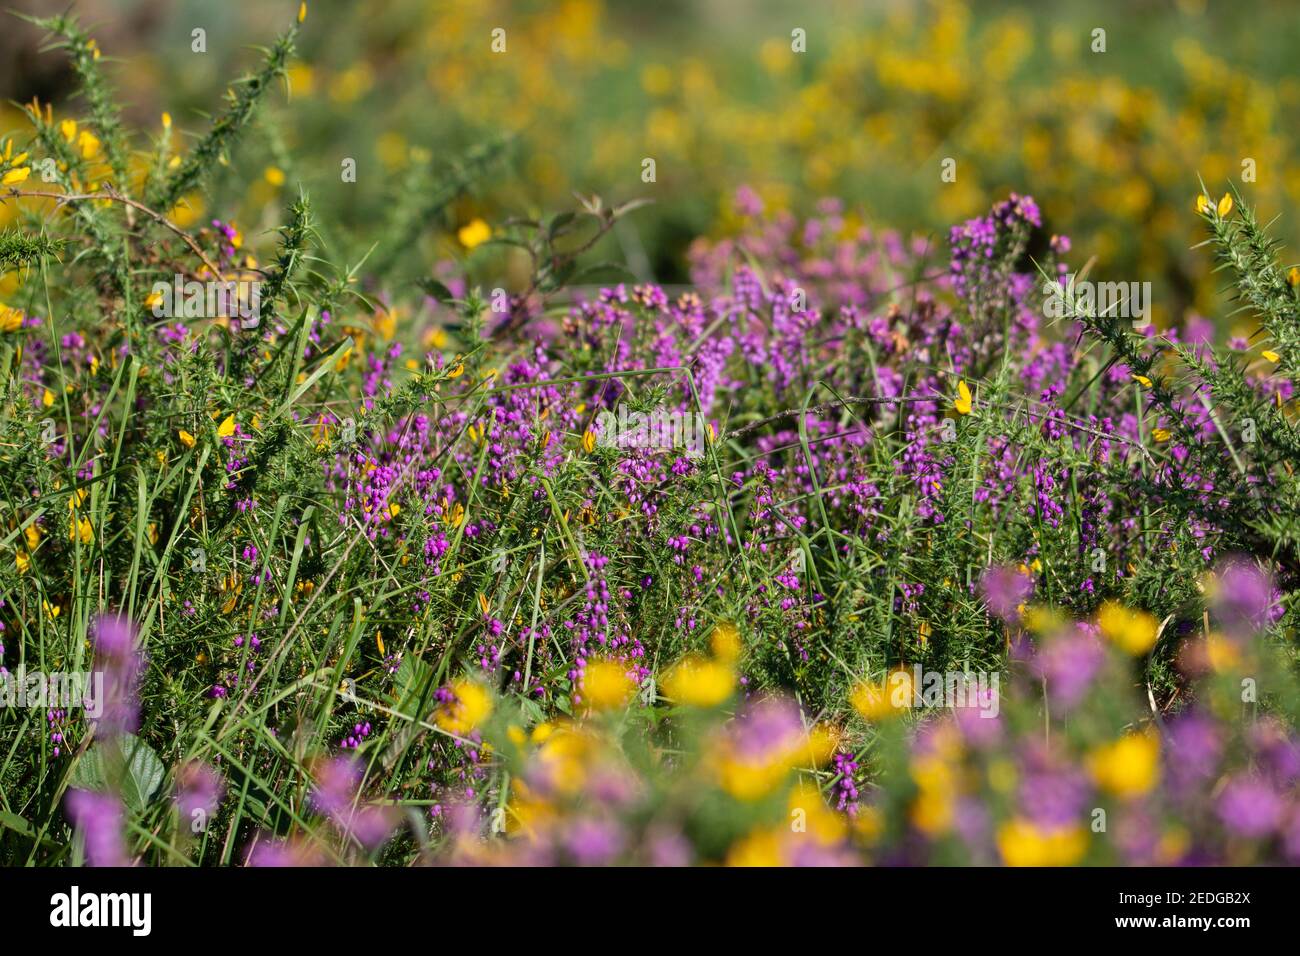 flowering heather (Calluna vulgaris) and yellow flowering gorse Stock Photo